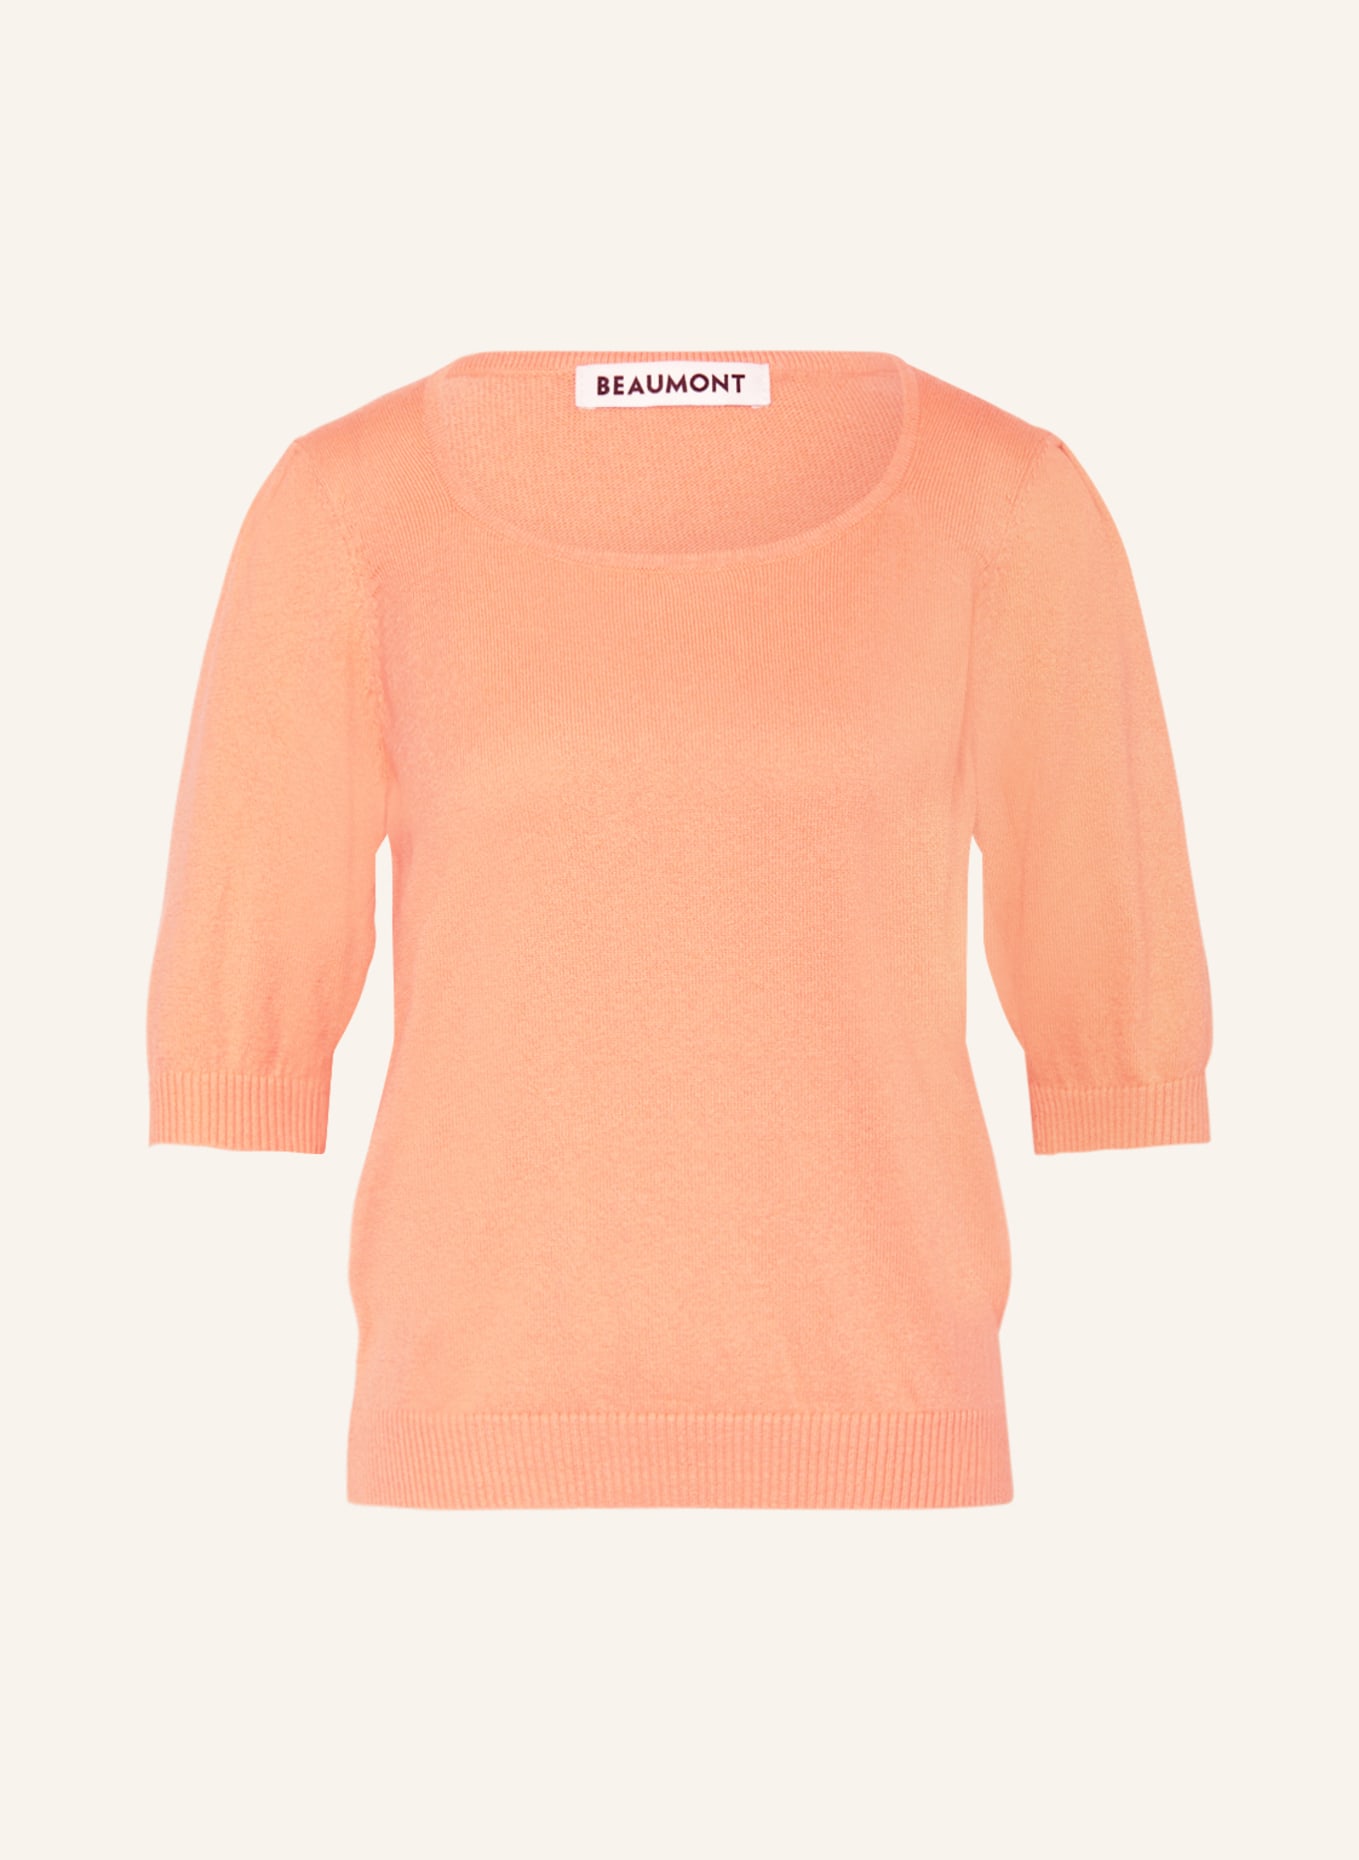 BEAUMONT Knit shirt EVER, Color: ORANGE (Image 1)